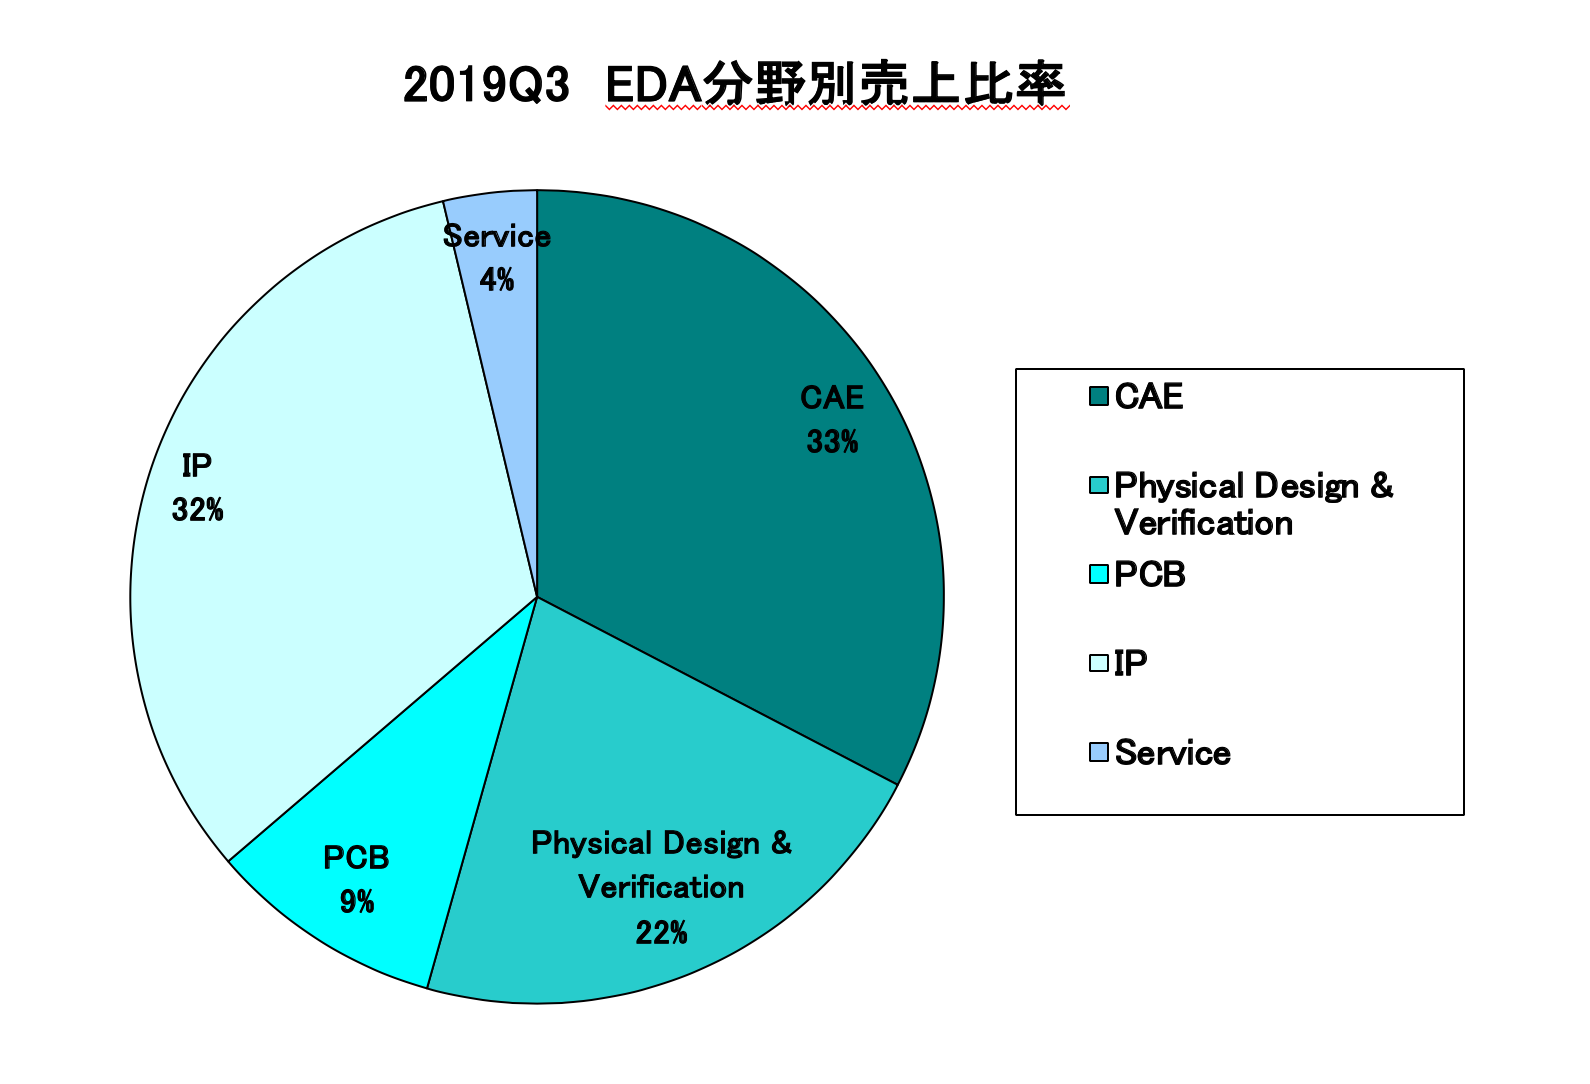 https://www.eda-express.com/%E3%82%B9%E3%82%AF%E3%83%AA%E3%83%BC%E3%83%B3%E3%82%B7%E3%83%A7%E3%83%83%E3%83%88%202020-01-10%209.49.30.png